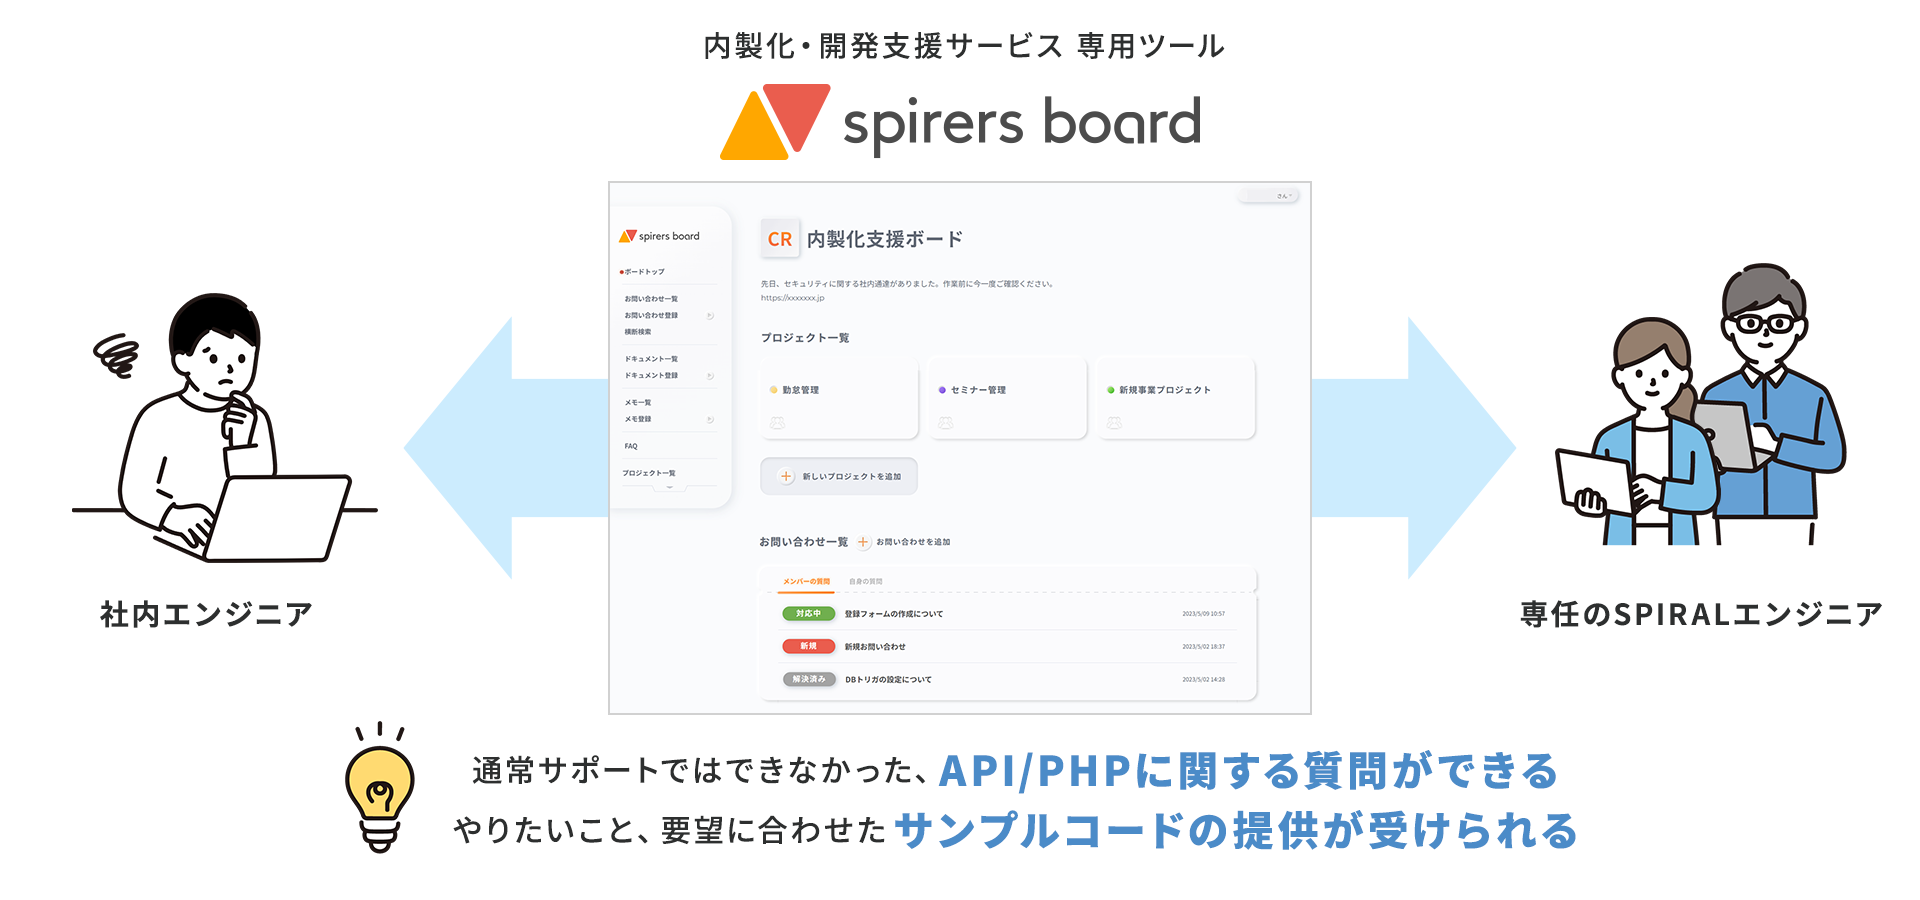 内製化・開発支援サービス　専用ツール「spirers board」:
通常サポートではできなかったAPI/PHPに関する質問ができる。やりたいこと、要望にあわせたサンプルコードの提供が受けられる